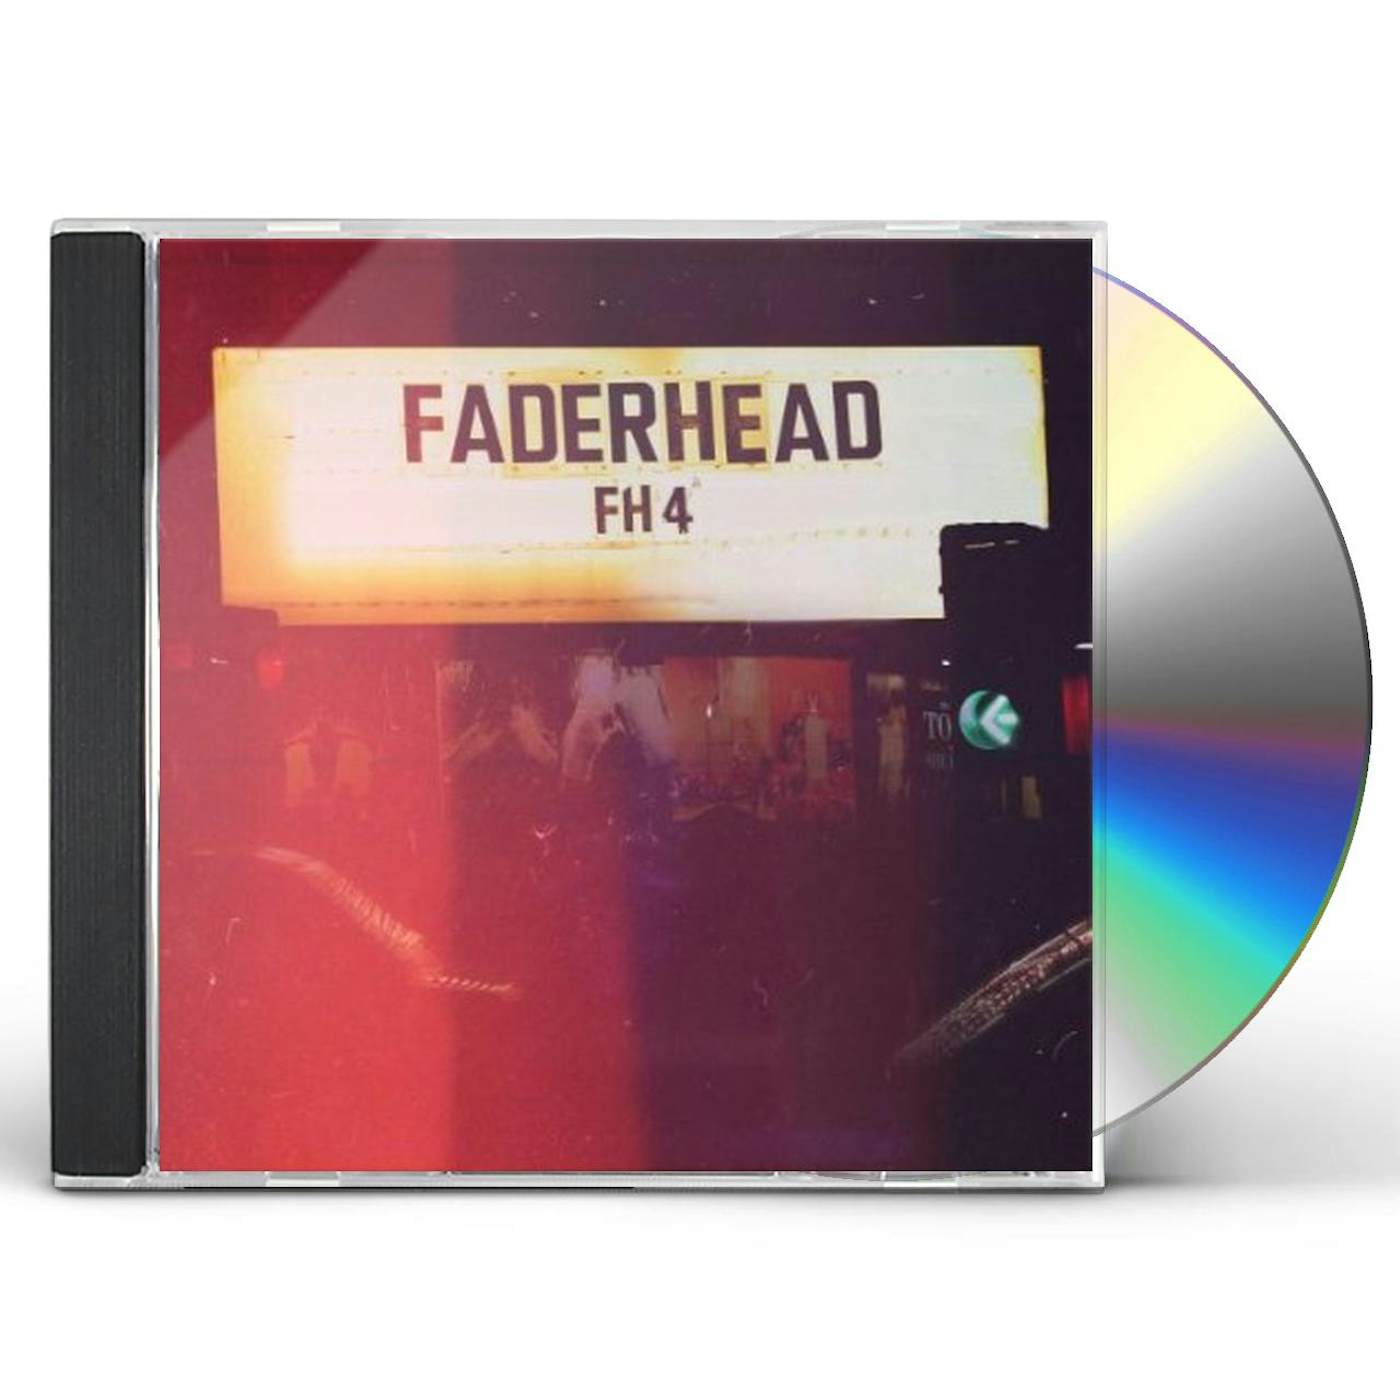 Faderhead FH4 CD